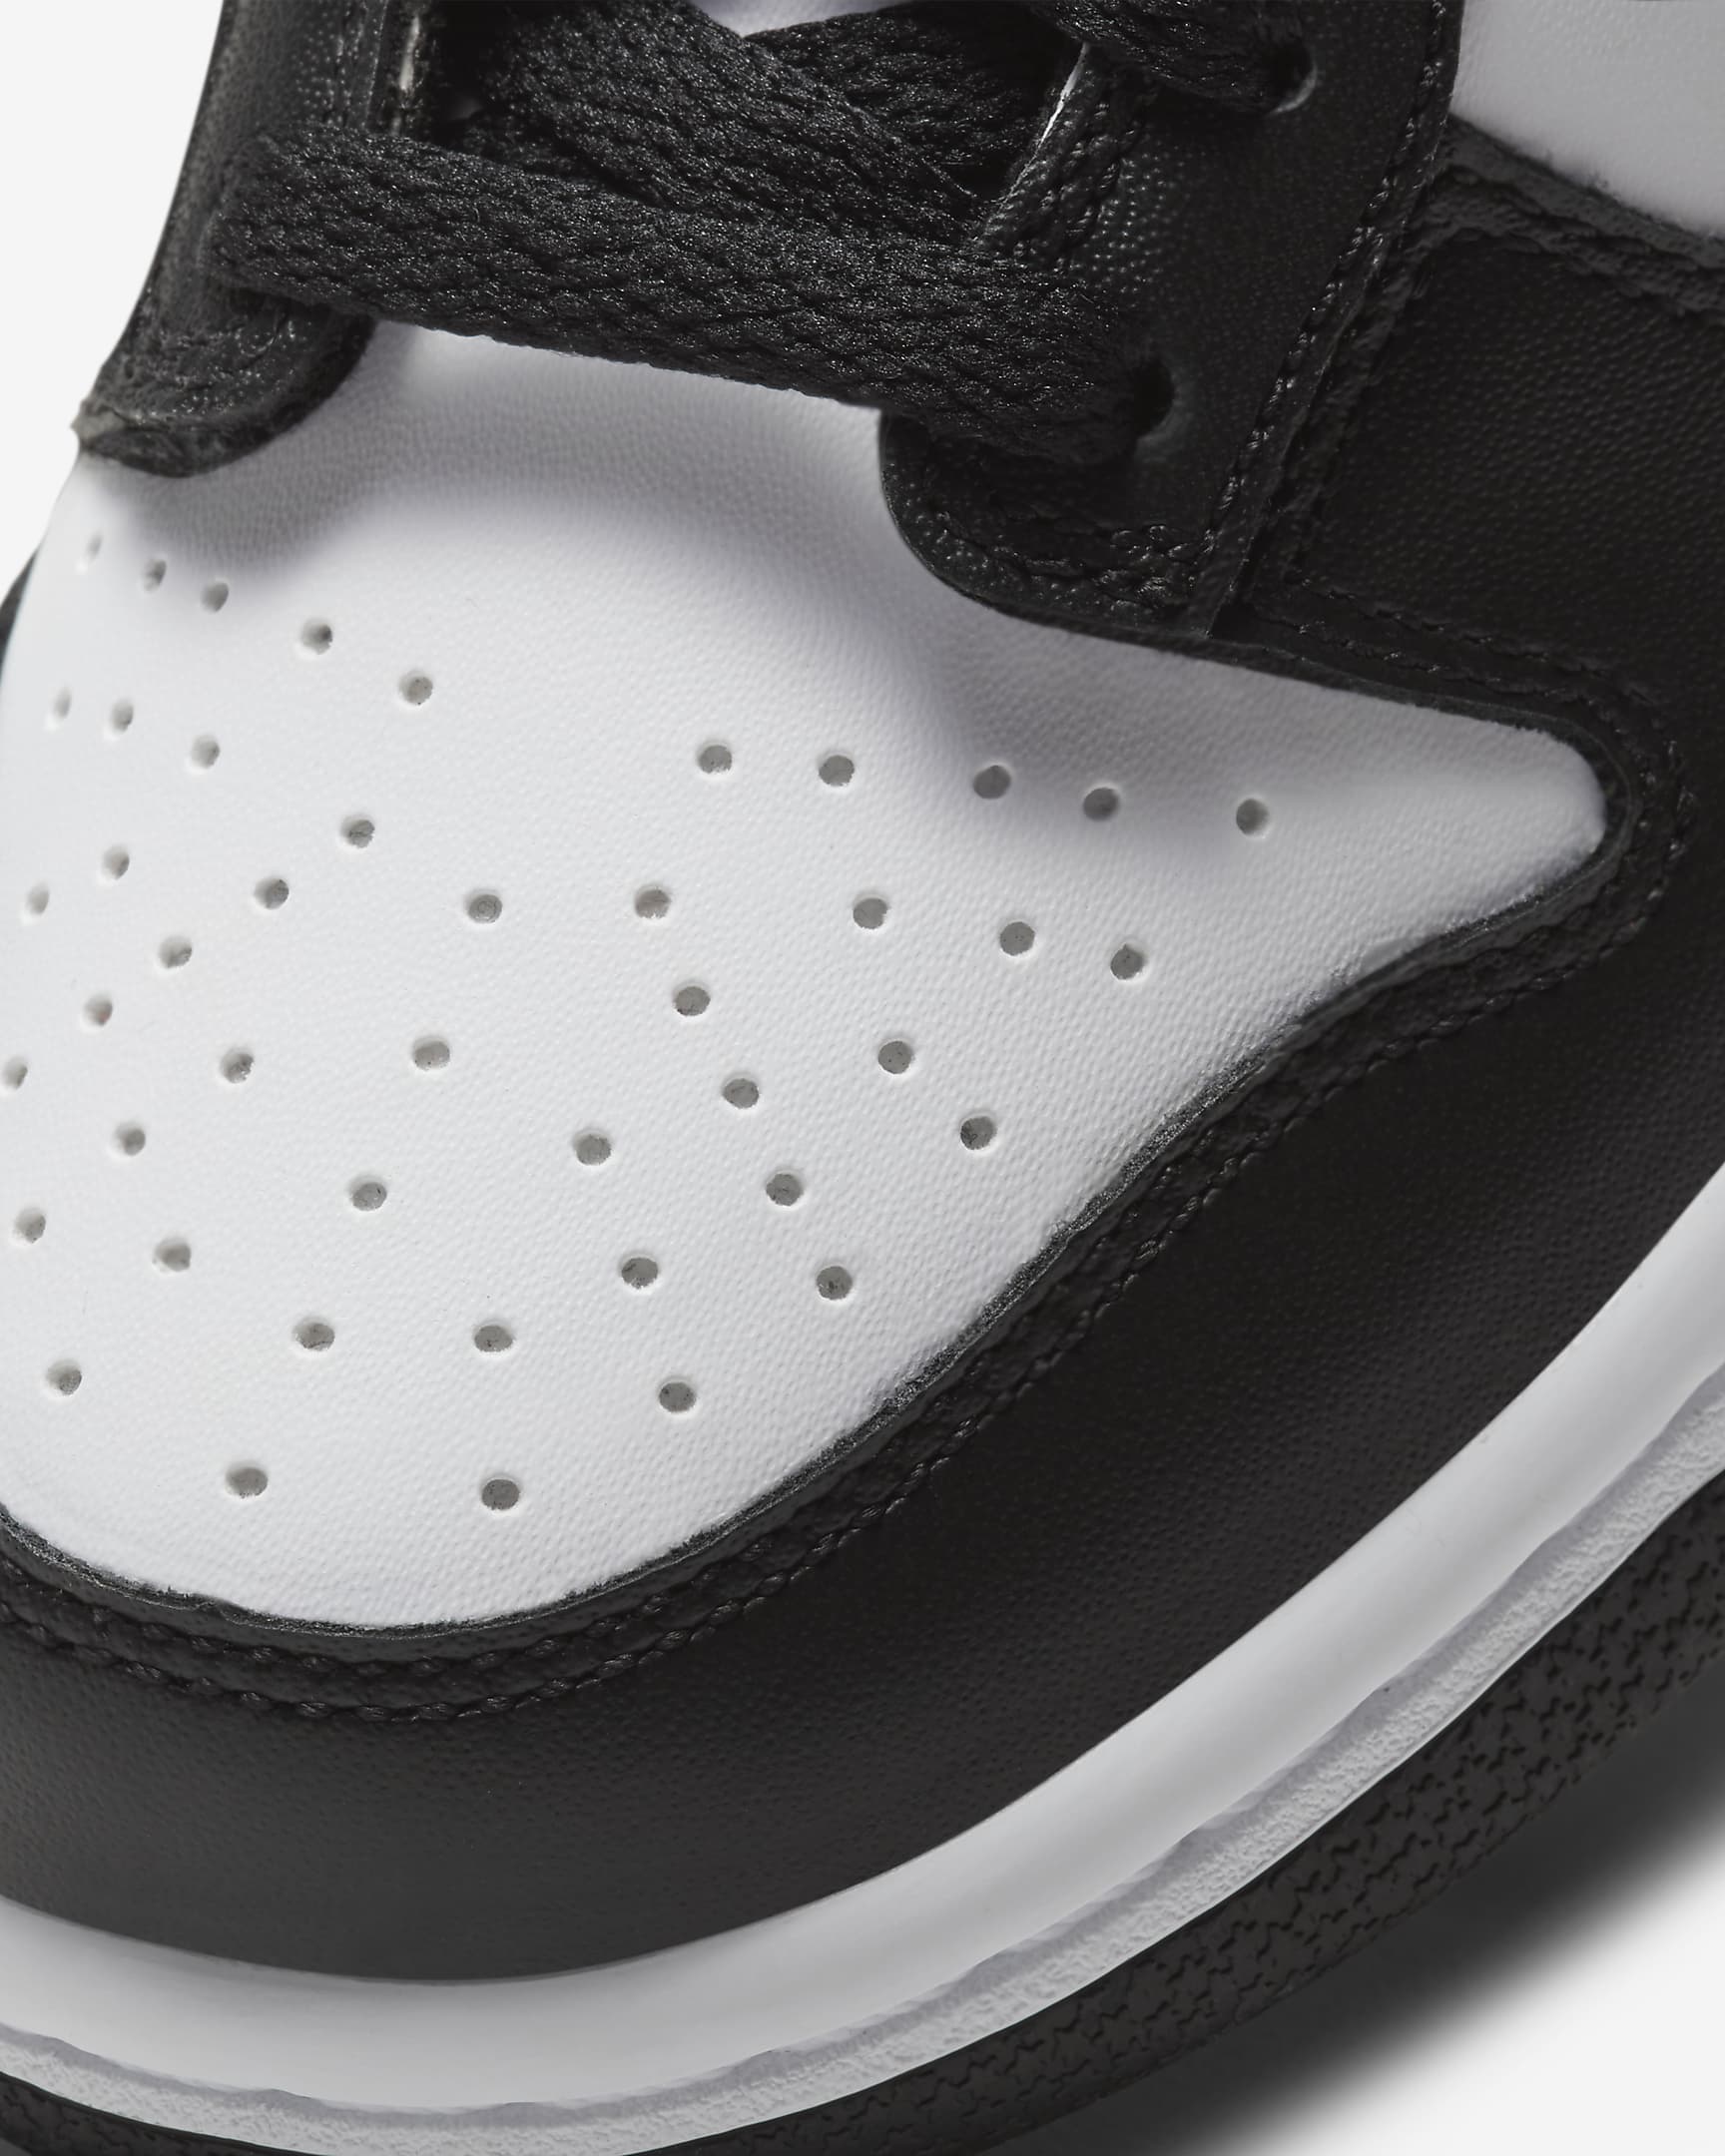 Chaussure Nike Dunk Low pour ado - Blanc/Blanc/Noir